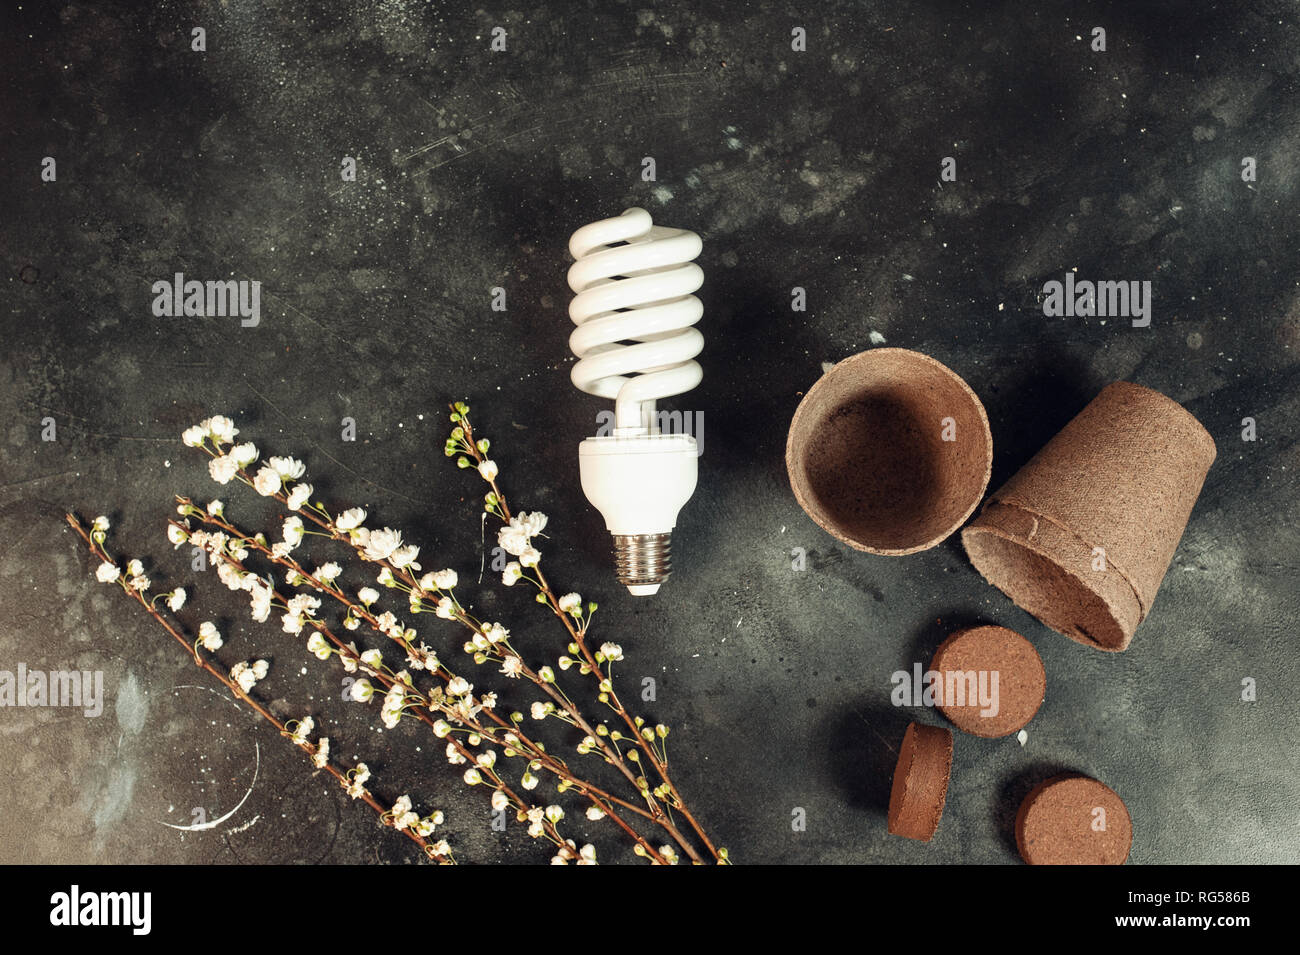 eco bulb energy saving concept Stock Photo